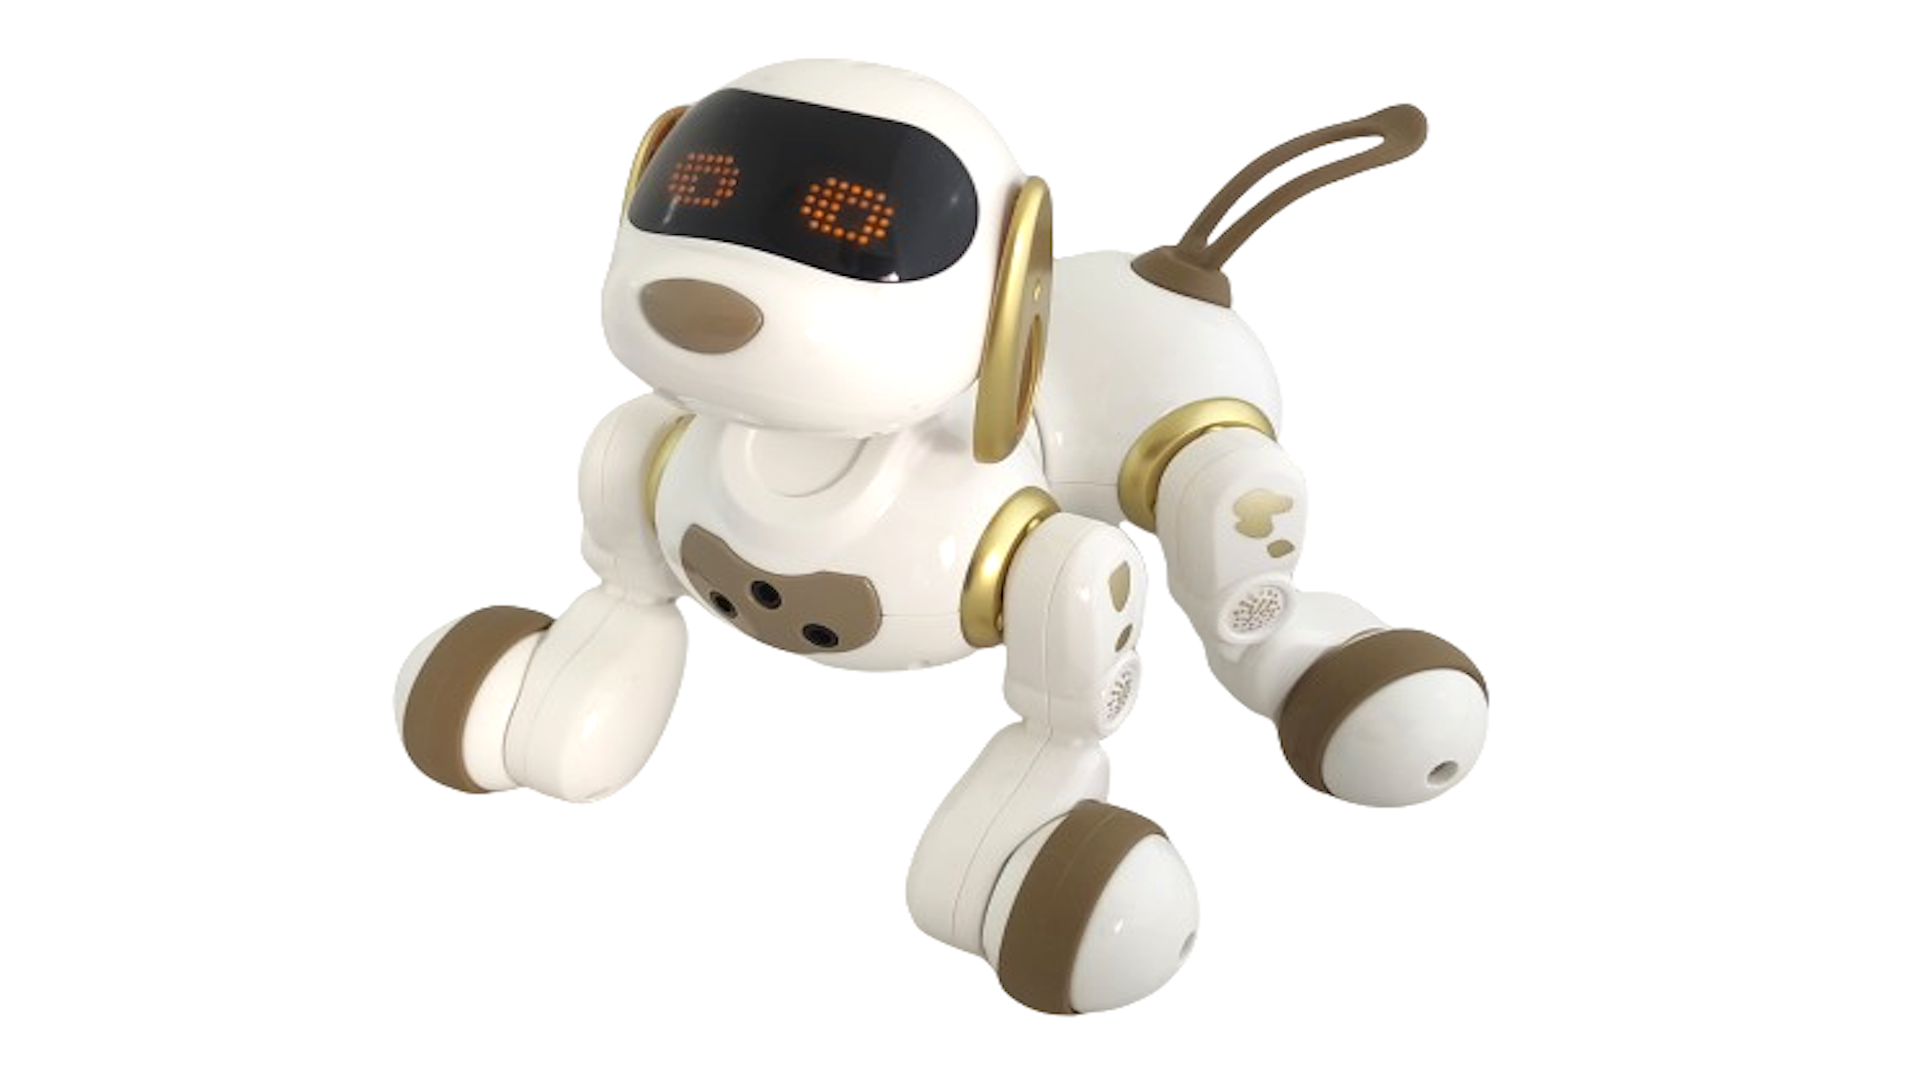 Интерактивная радиоуправляемая собака робот Smart Robot Dog Dexterity AMWELL AW-18011-GOLD интерактивная радиоуправляемая воздушная собачка робот zhorya сенсор выполняет команды